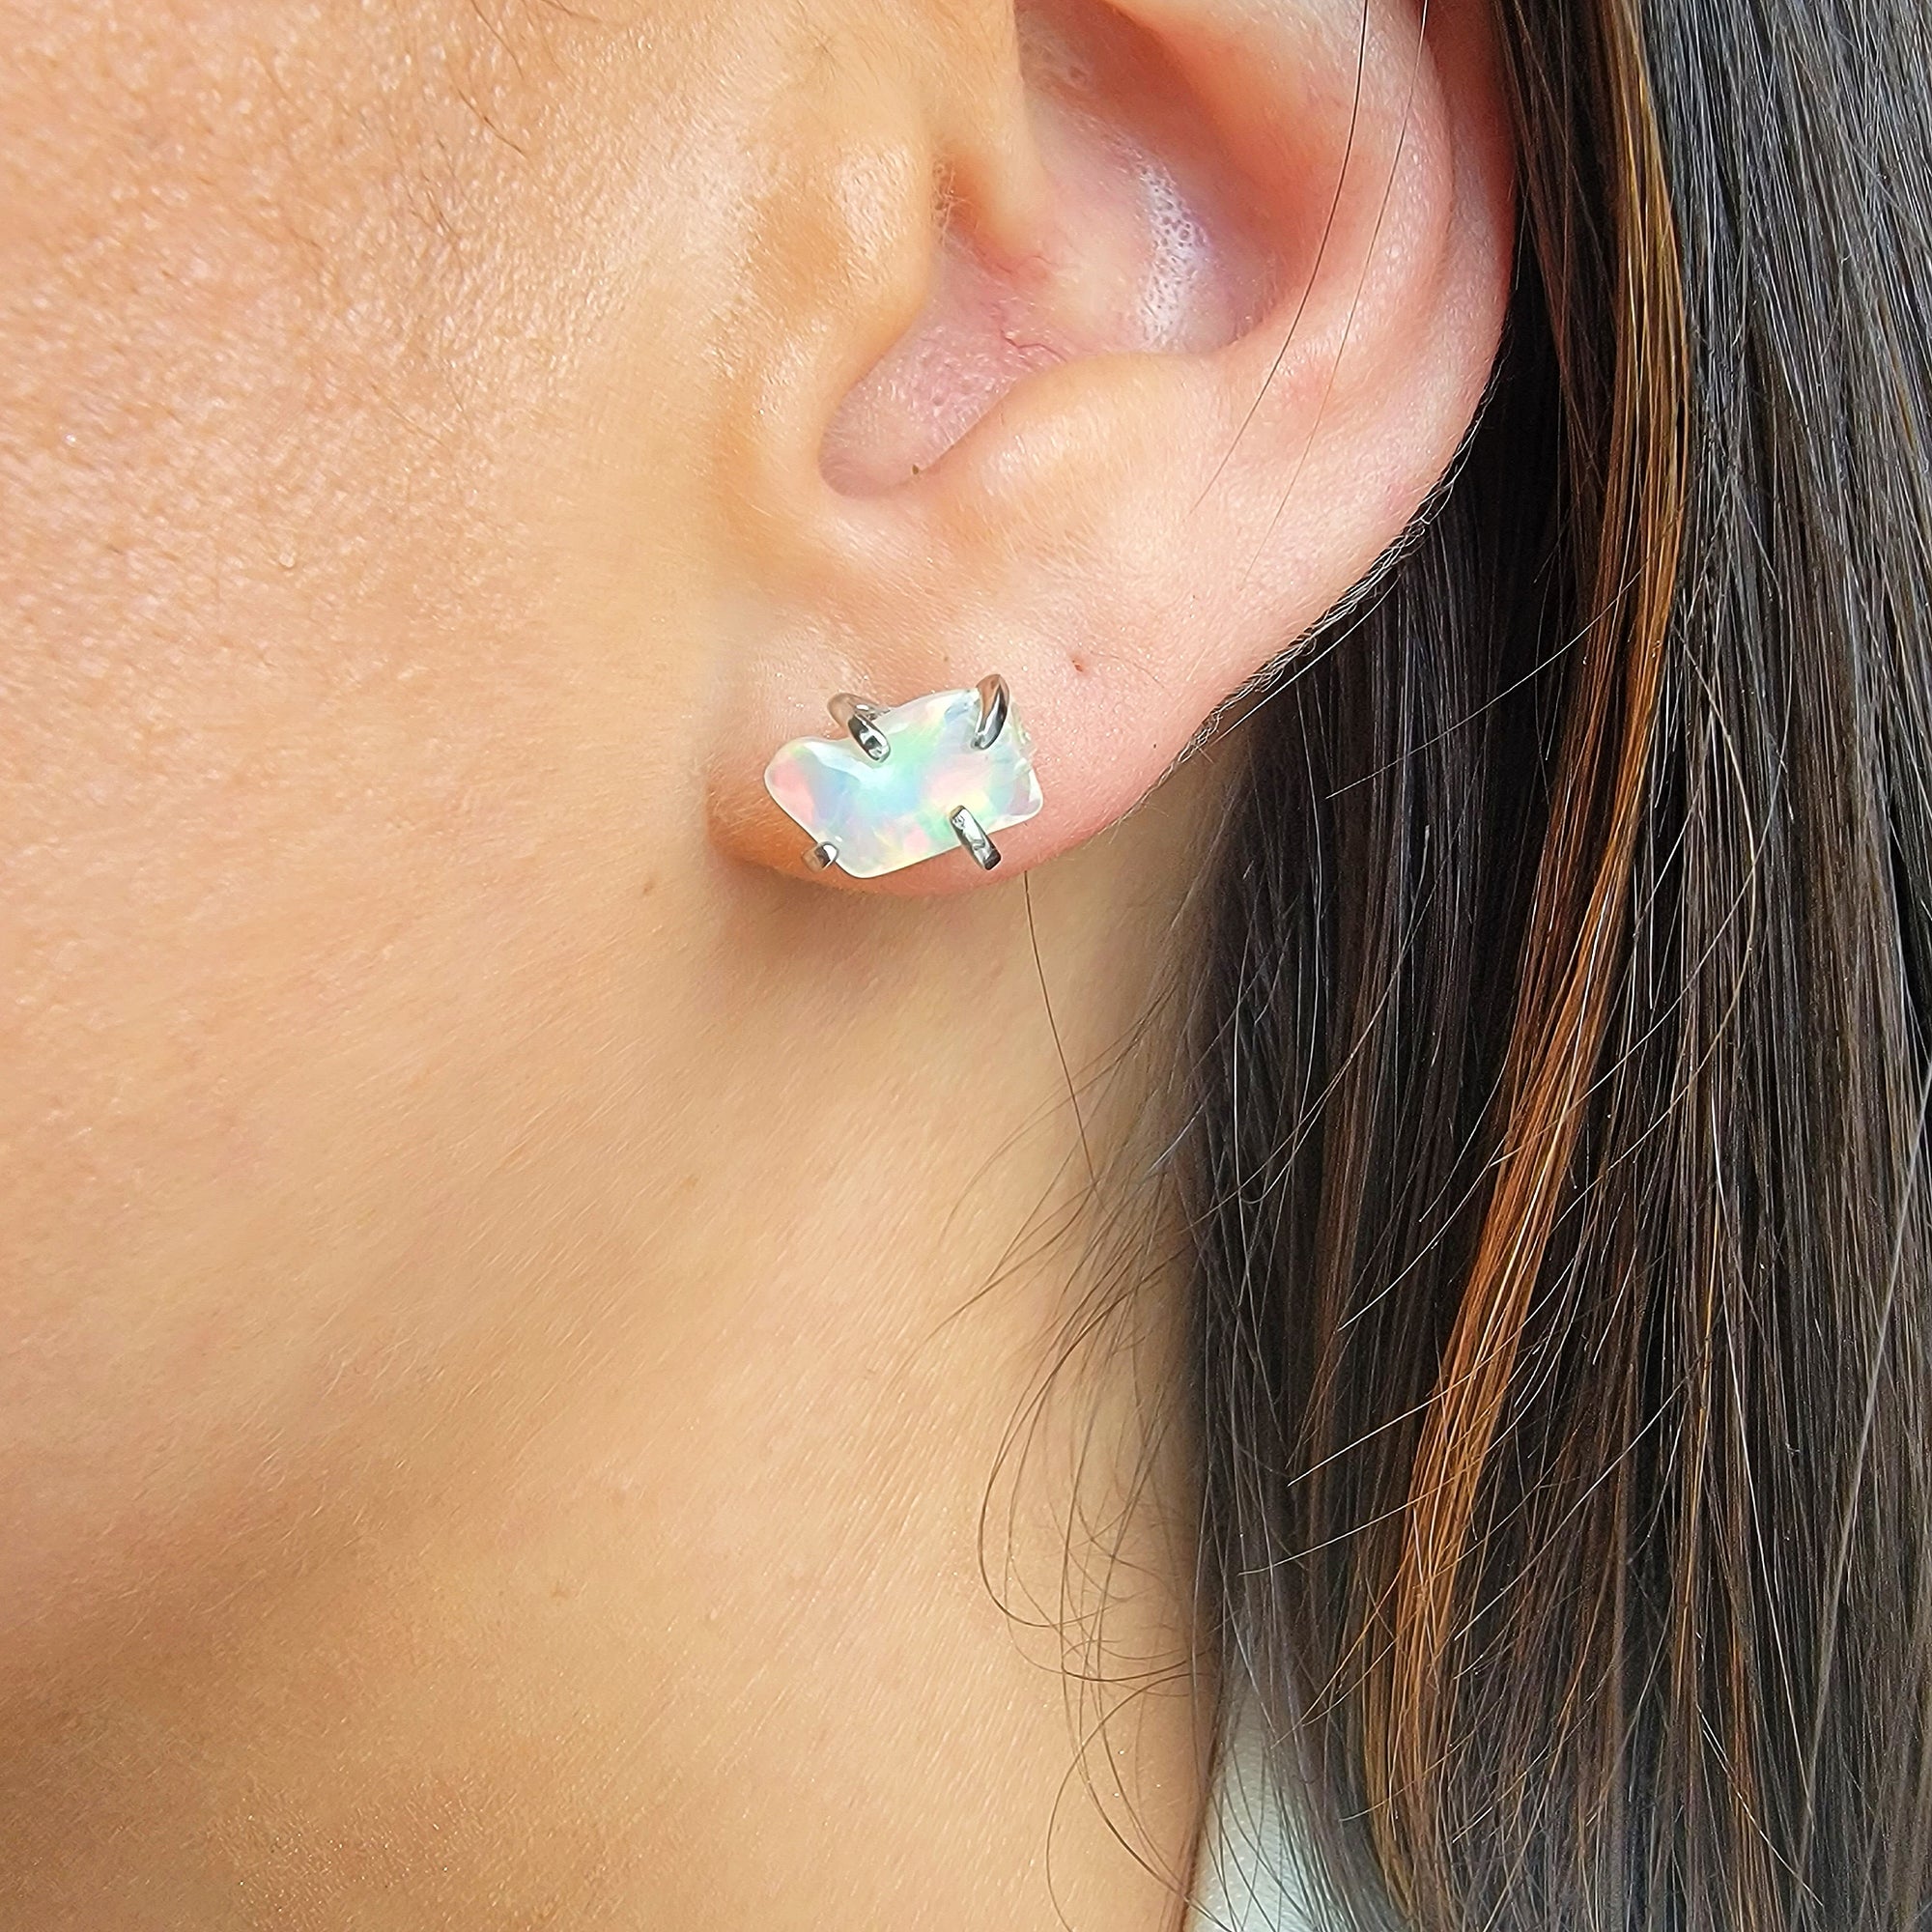 Raw Opal Stud Earrings